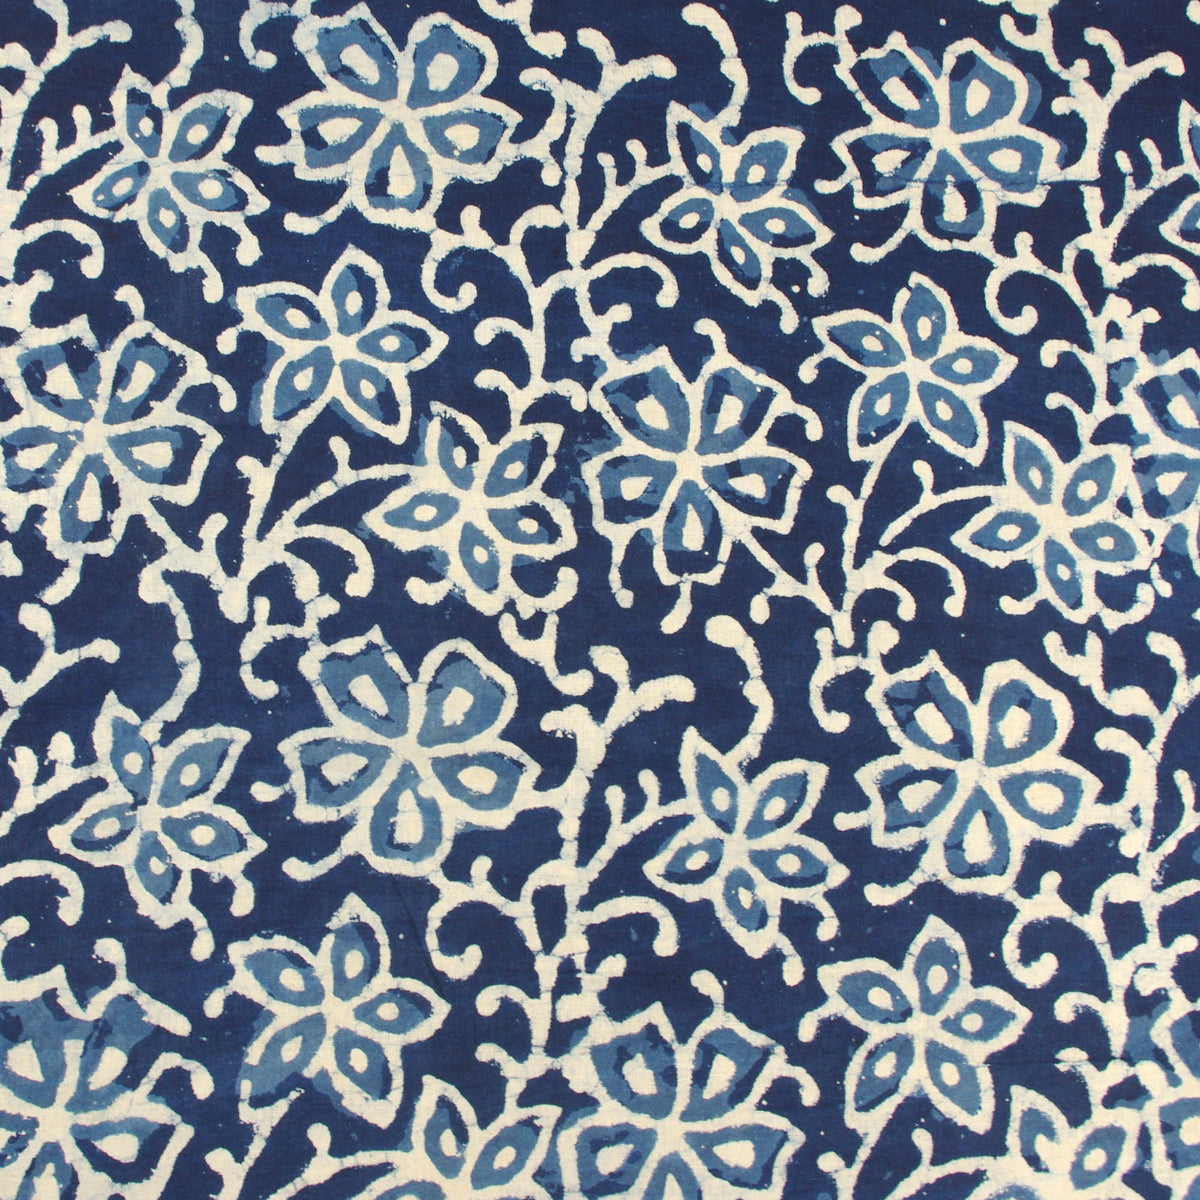 Block Print Fabric - Indigo Ladyfinger Flowers - Design 579